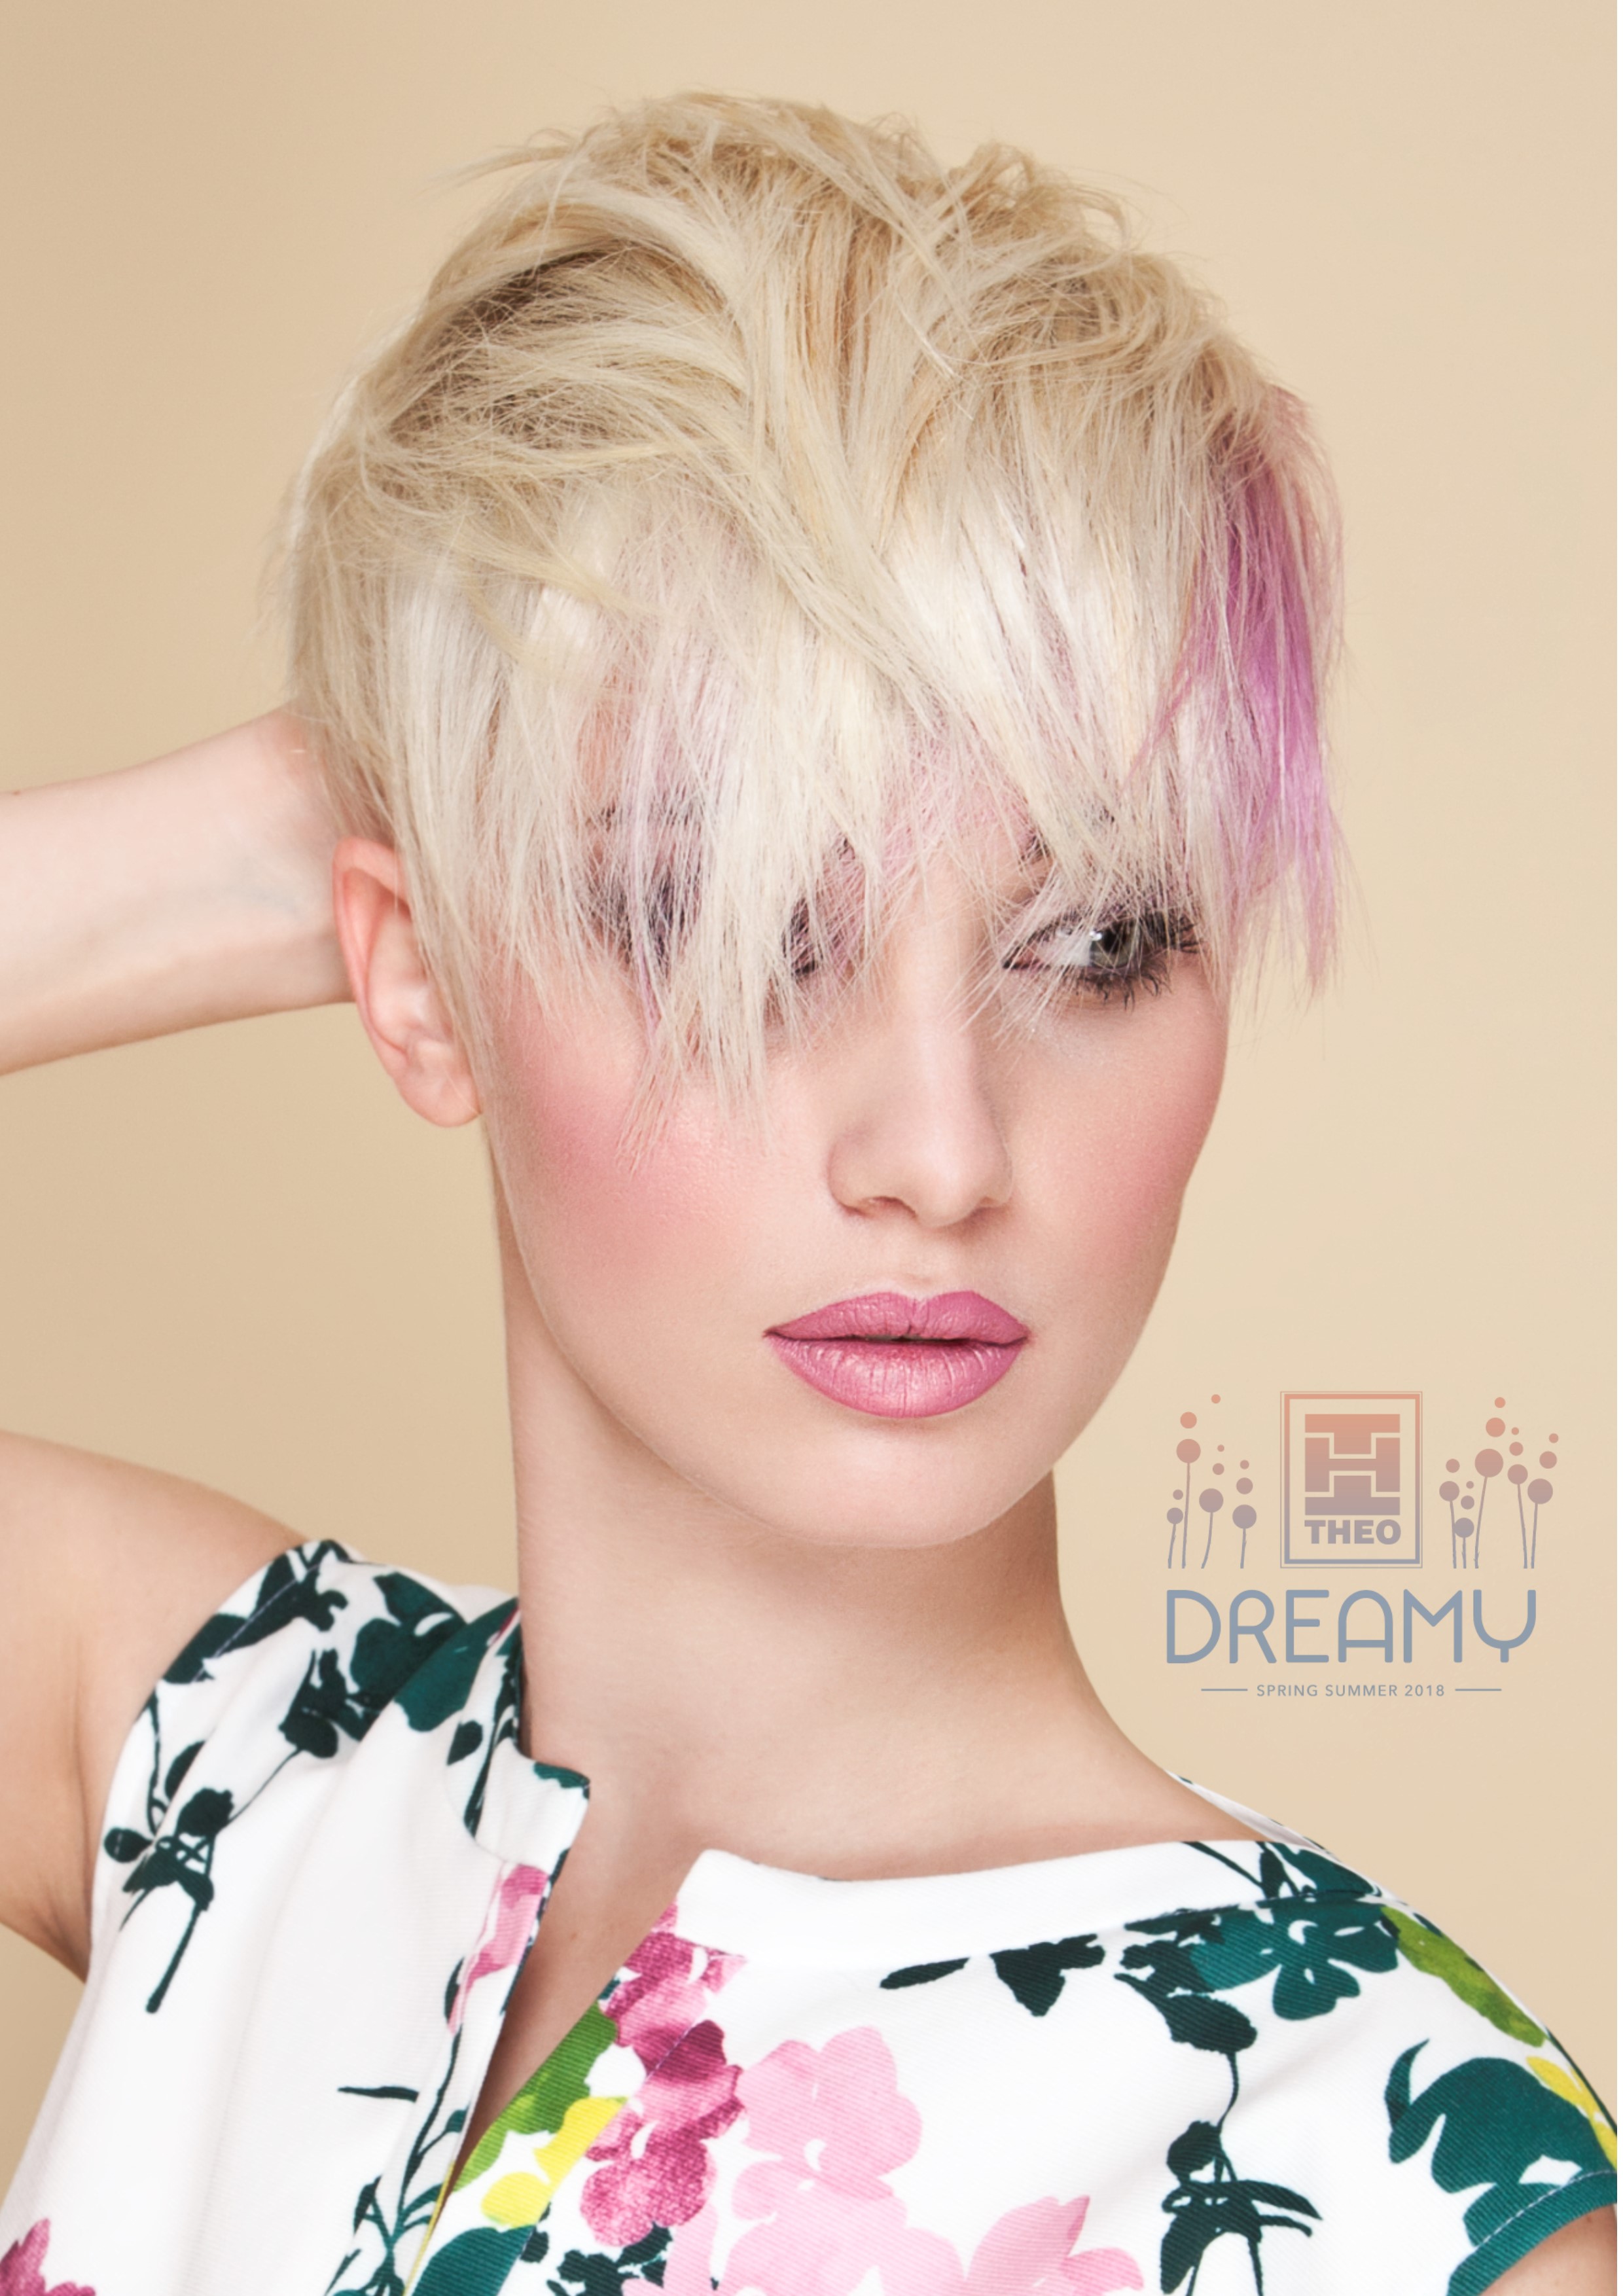 On line e nei nostri Saloni la nuova Collezione Hair Primavera Estate 2018 “Dreamy”